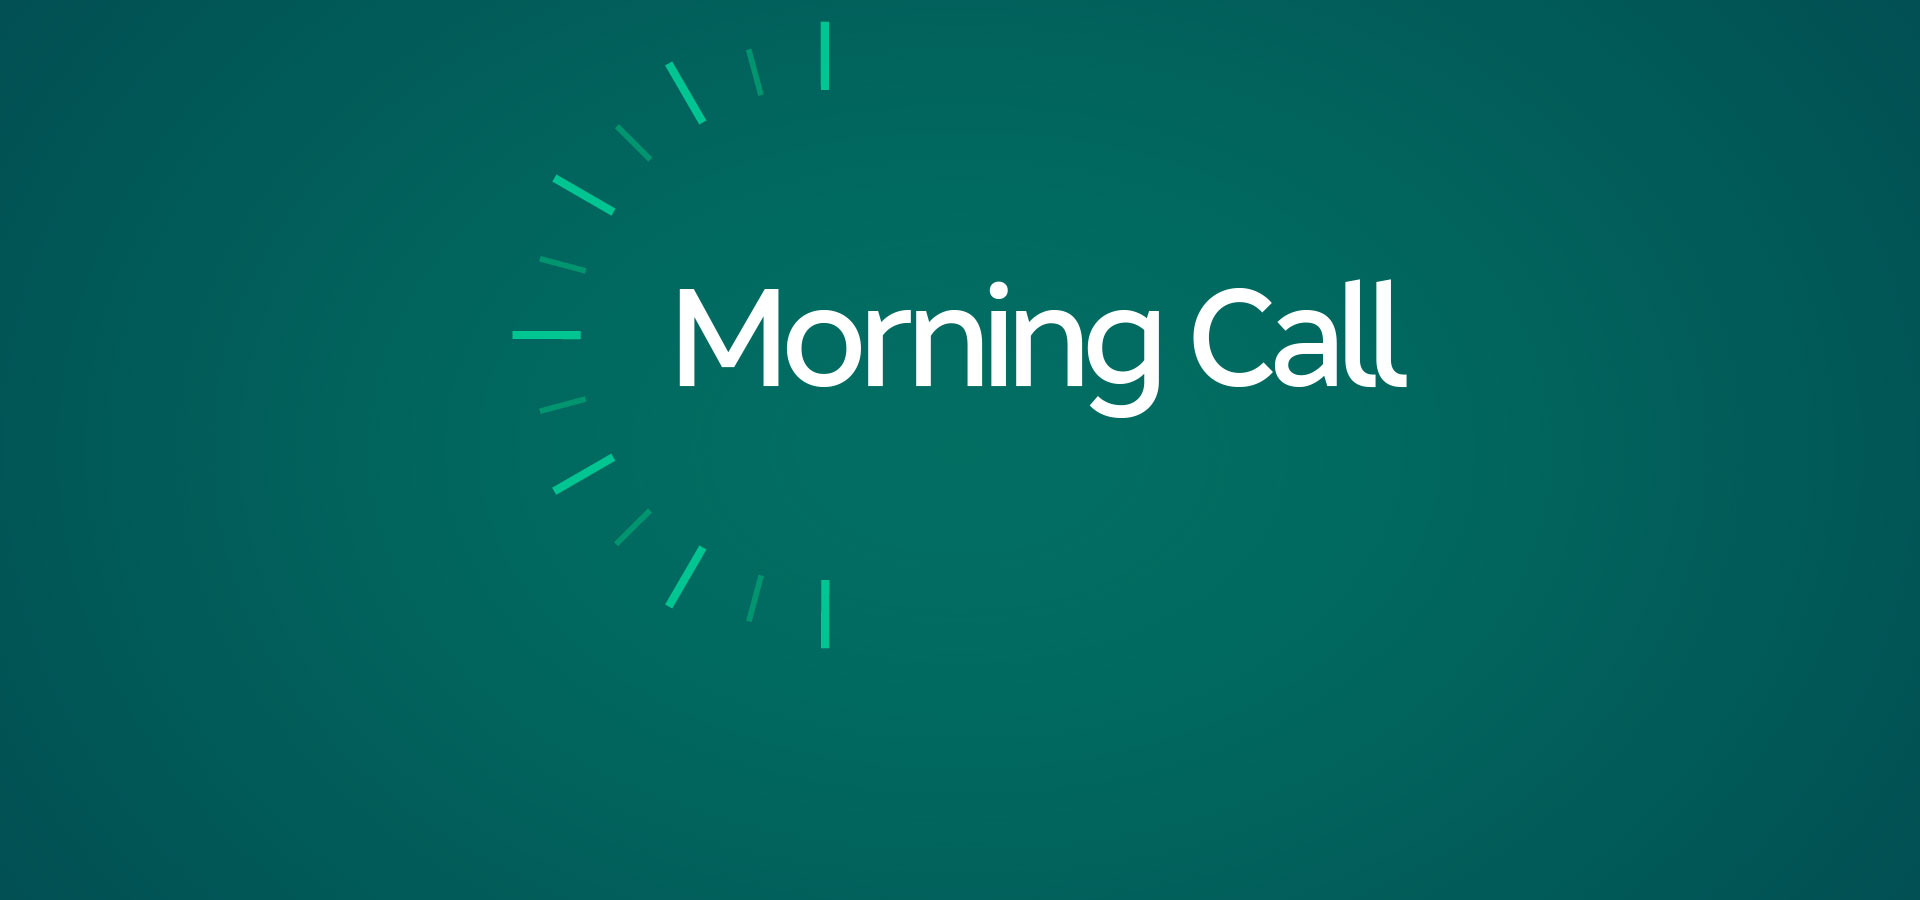 Morning Call – Day Trade e Swing Trade ao Vivo – Análise Gráfica - Índice, Dólar, Ações – 02/04